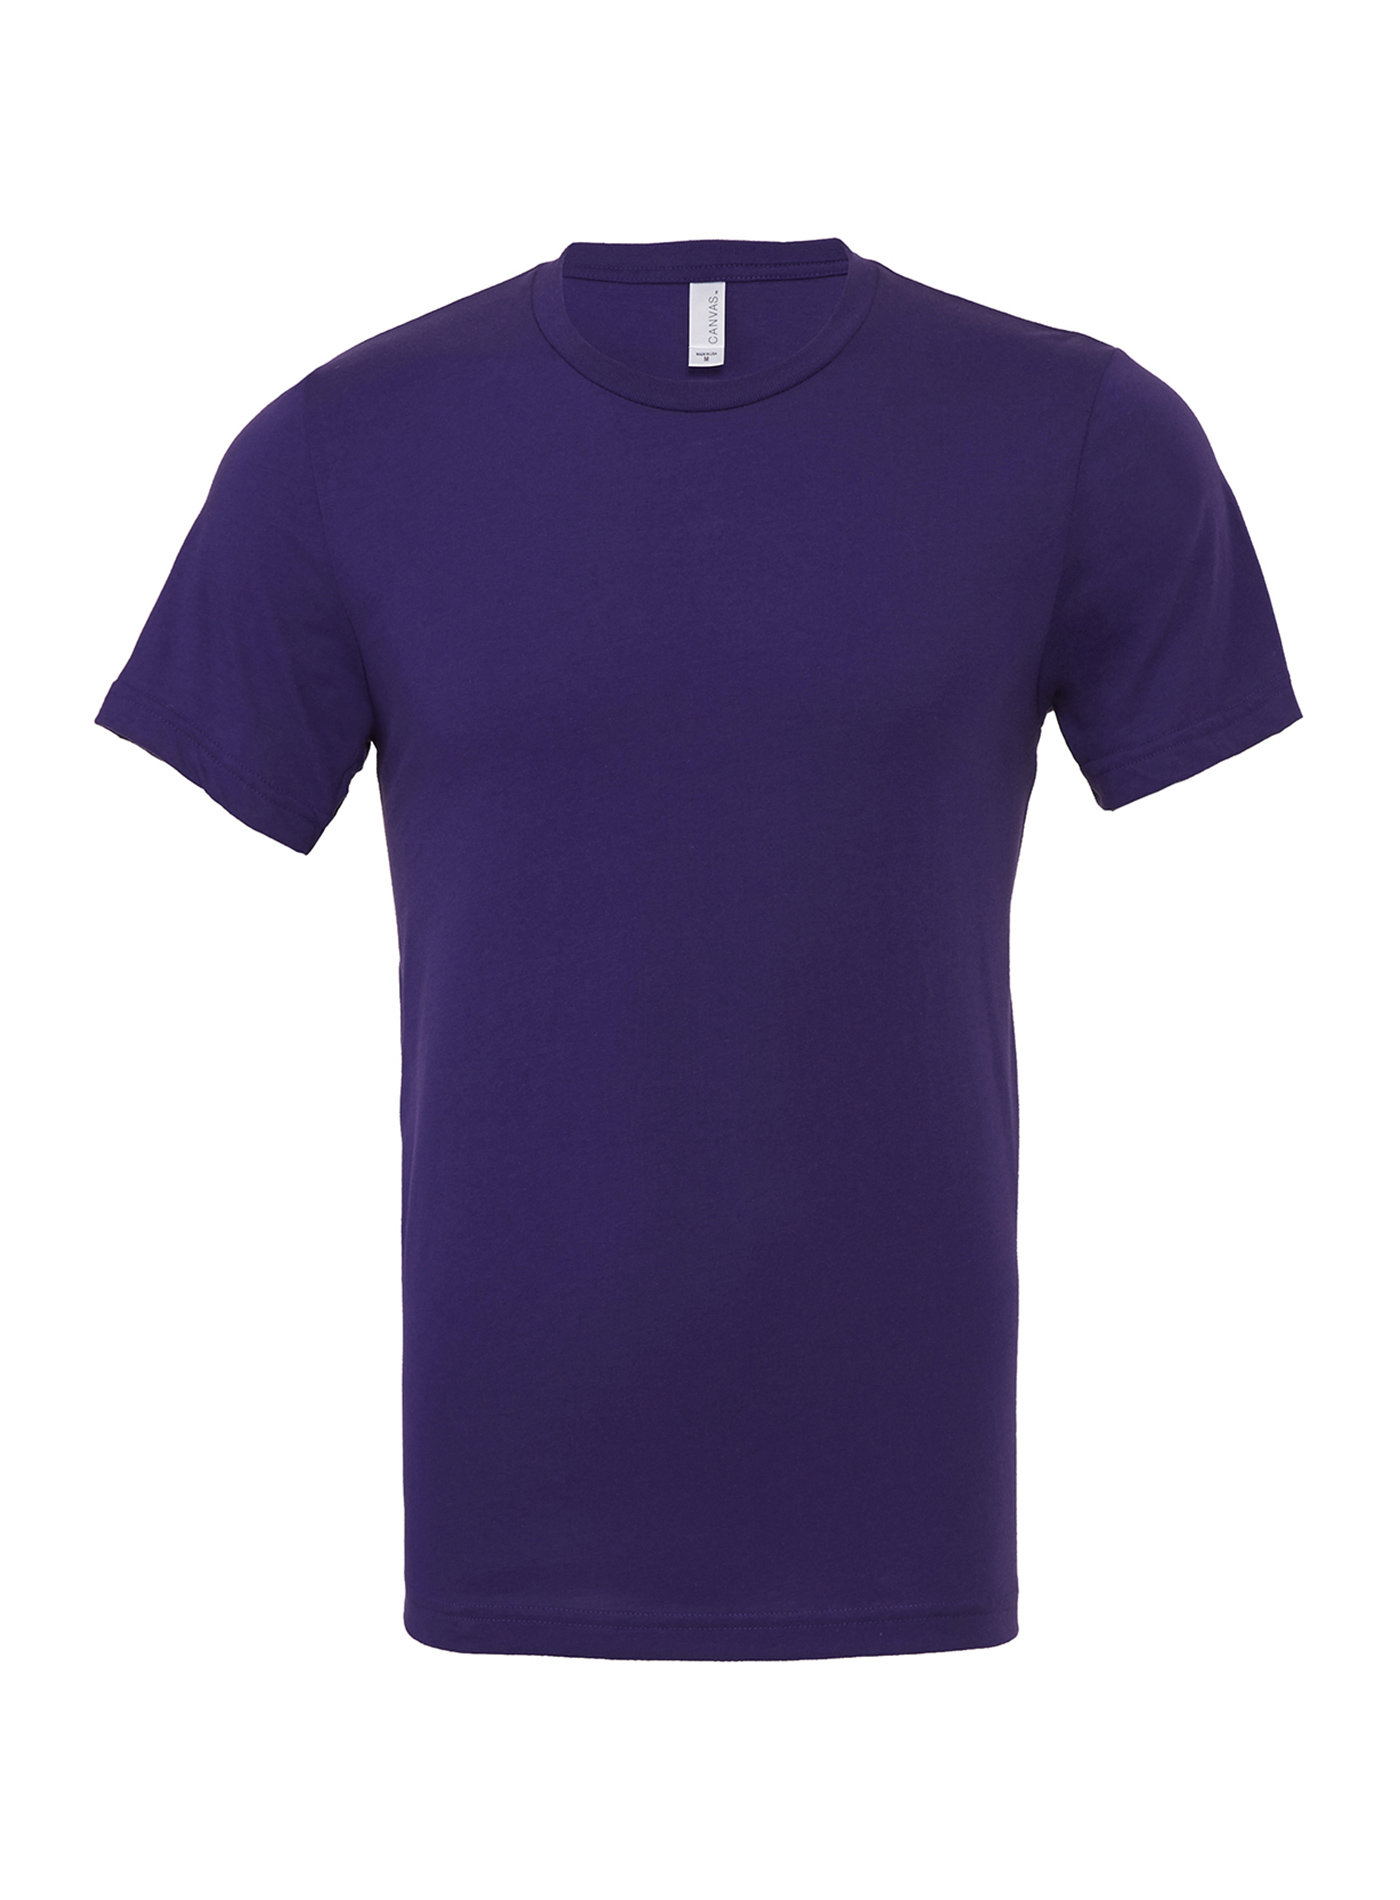 Unisex tričko Jersey - Fialová XL